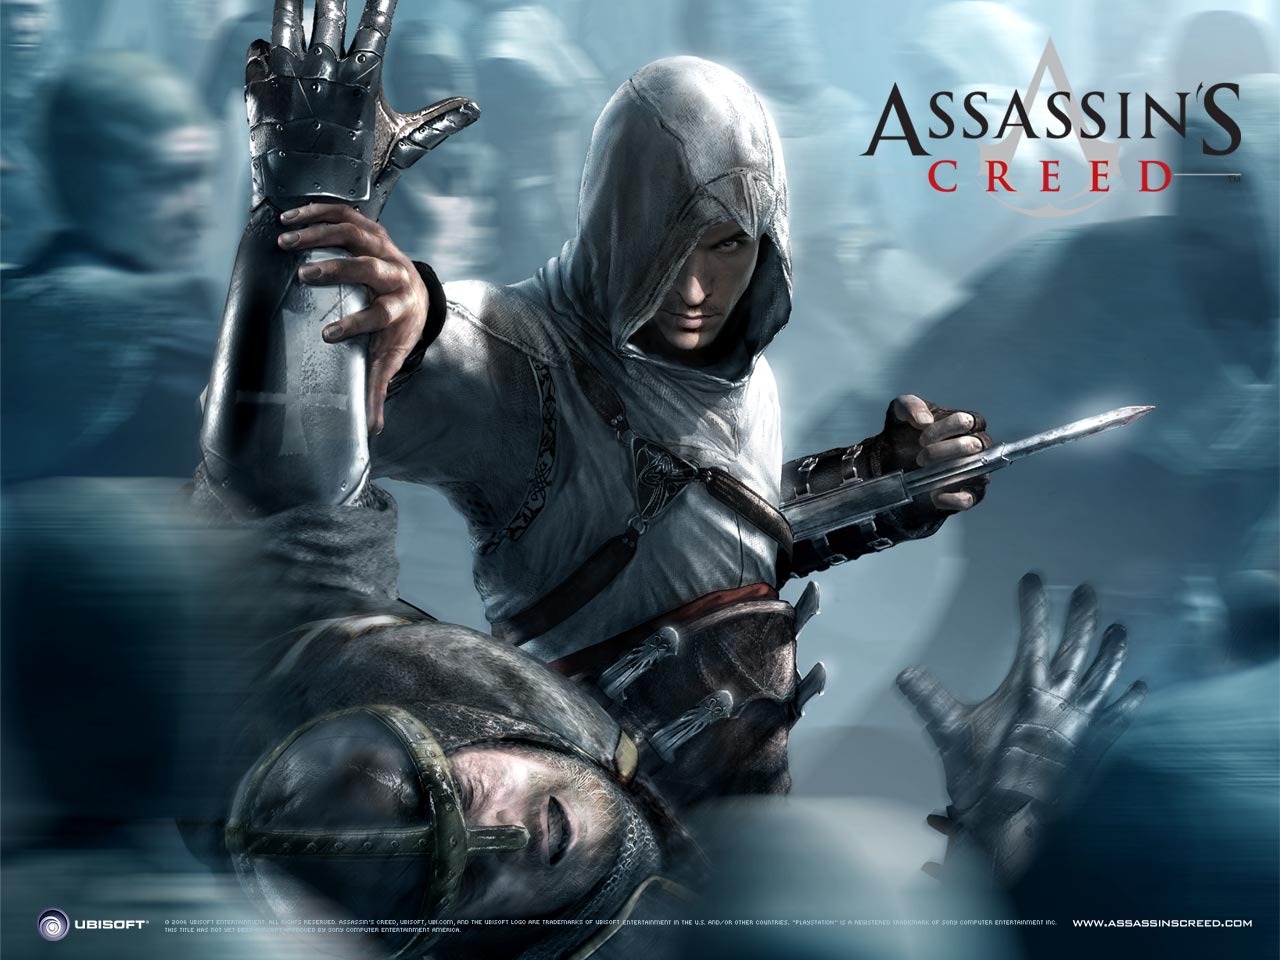 تحميل لعبة اسانس كريد 1 Assassins Creed للكمبيوتر برابط مباشر